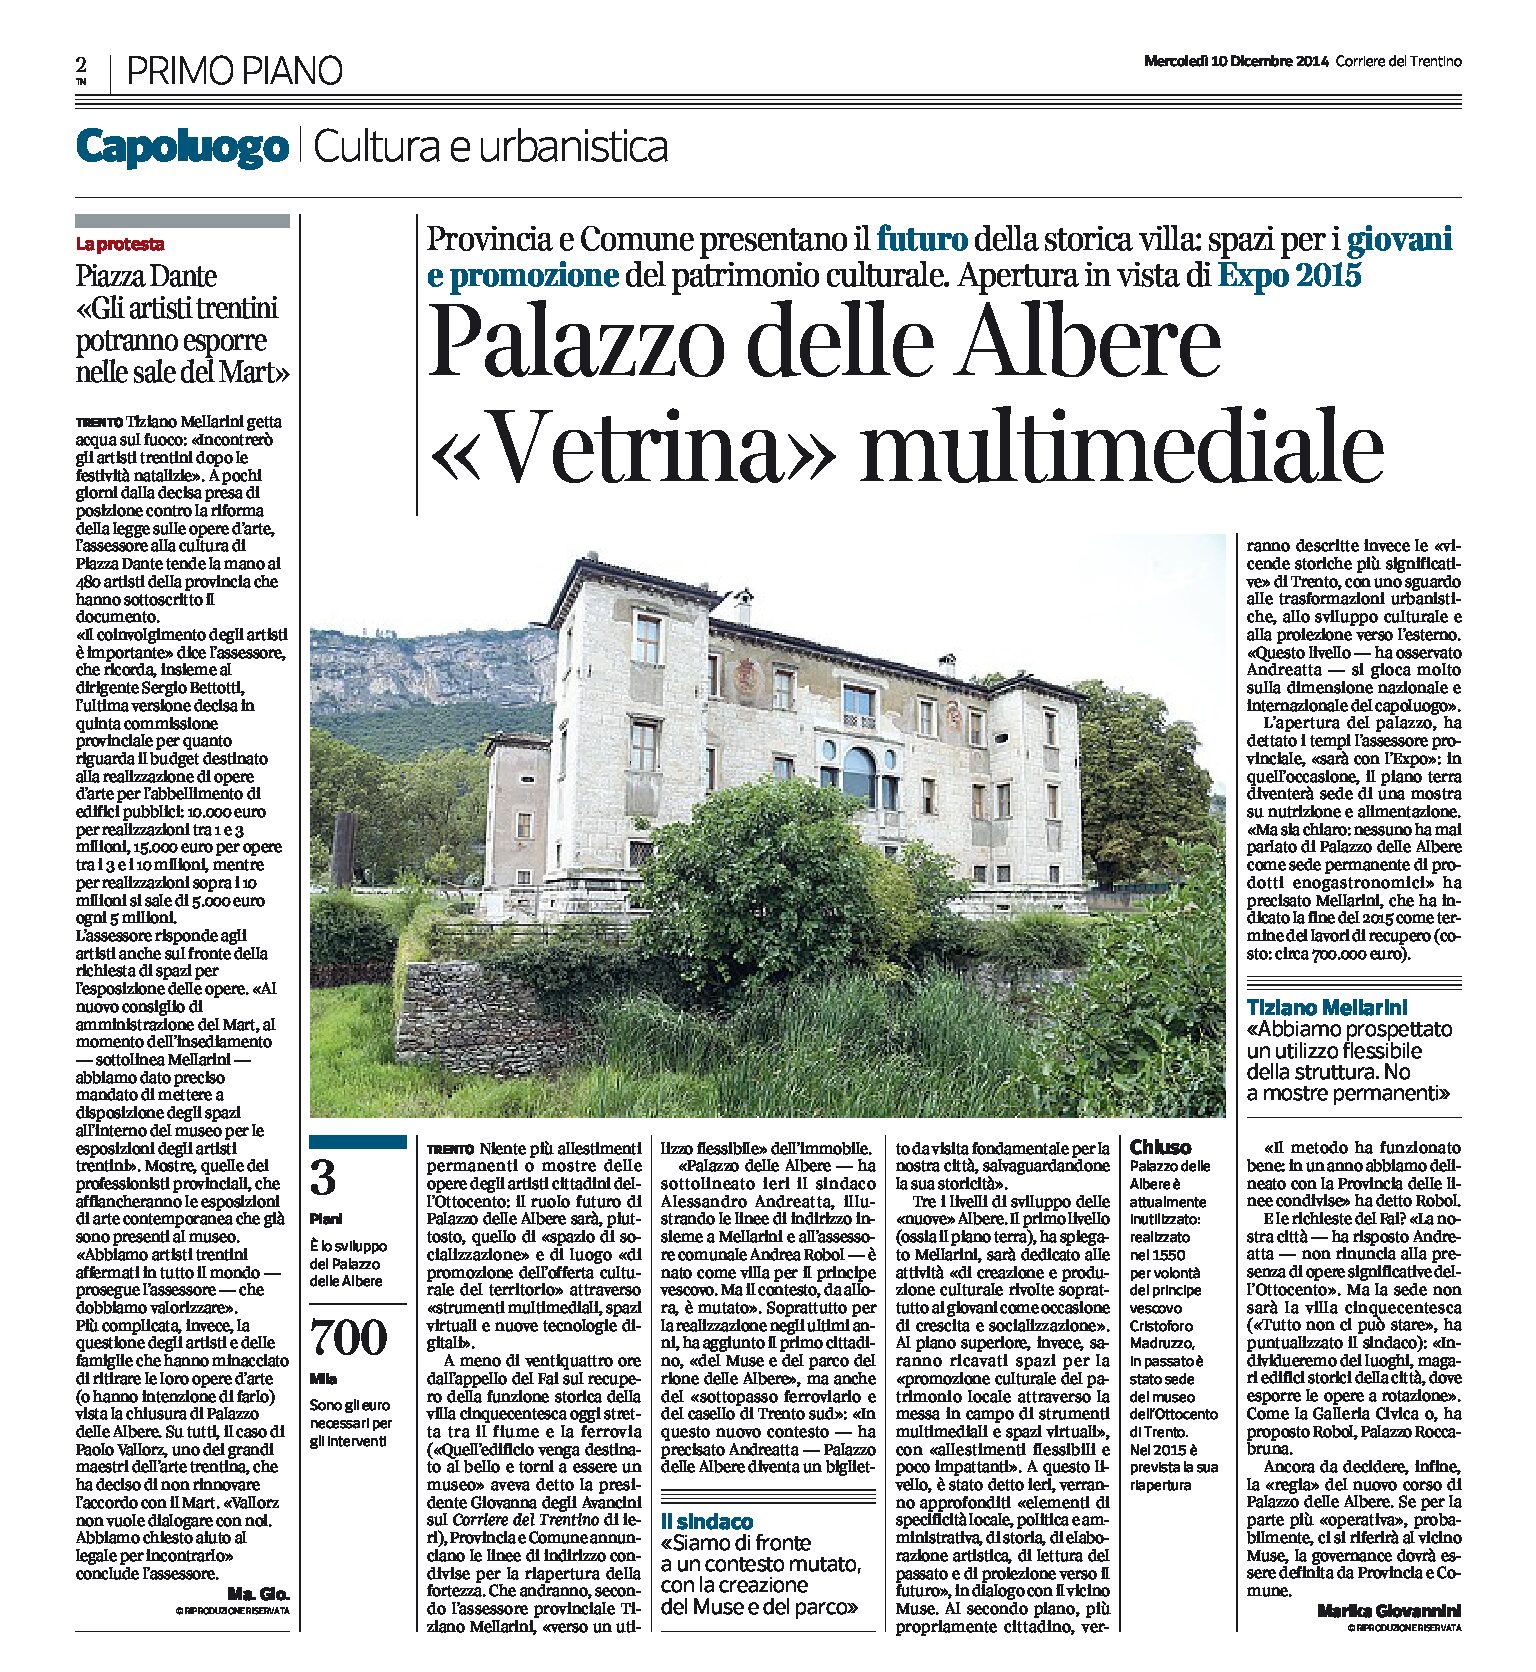 Trento: Palazzo delle Albere, vetrina multimediale